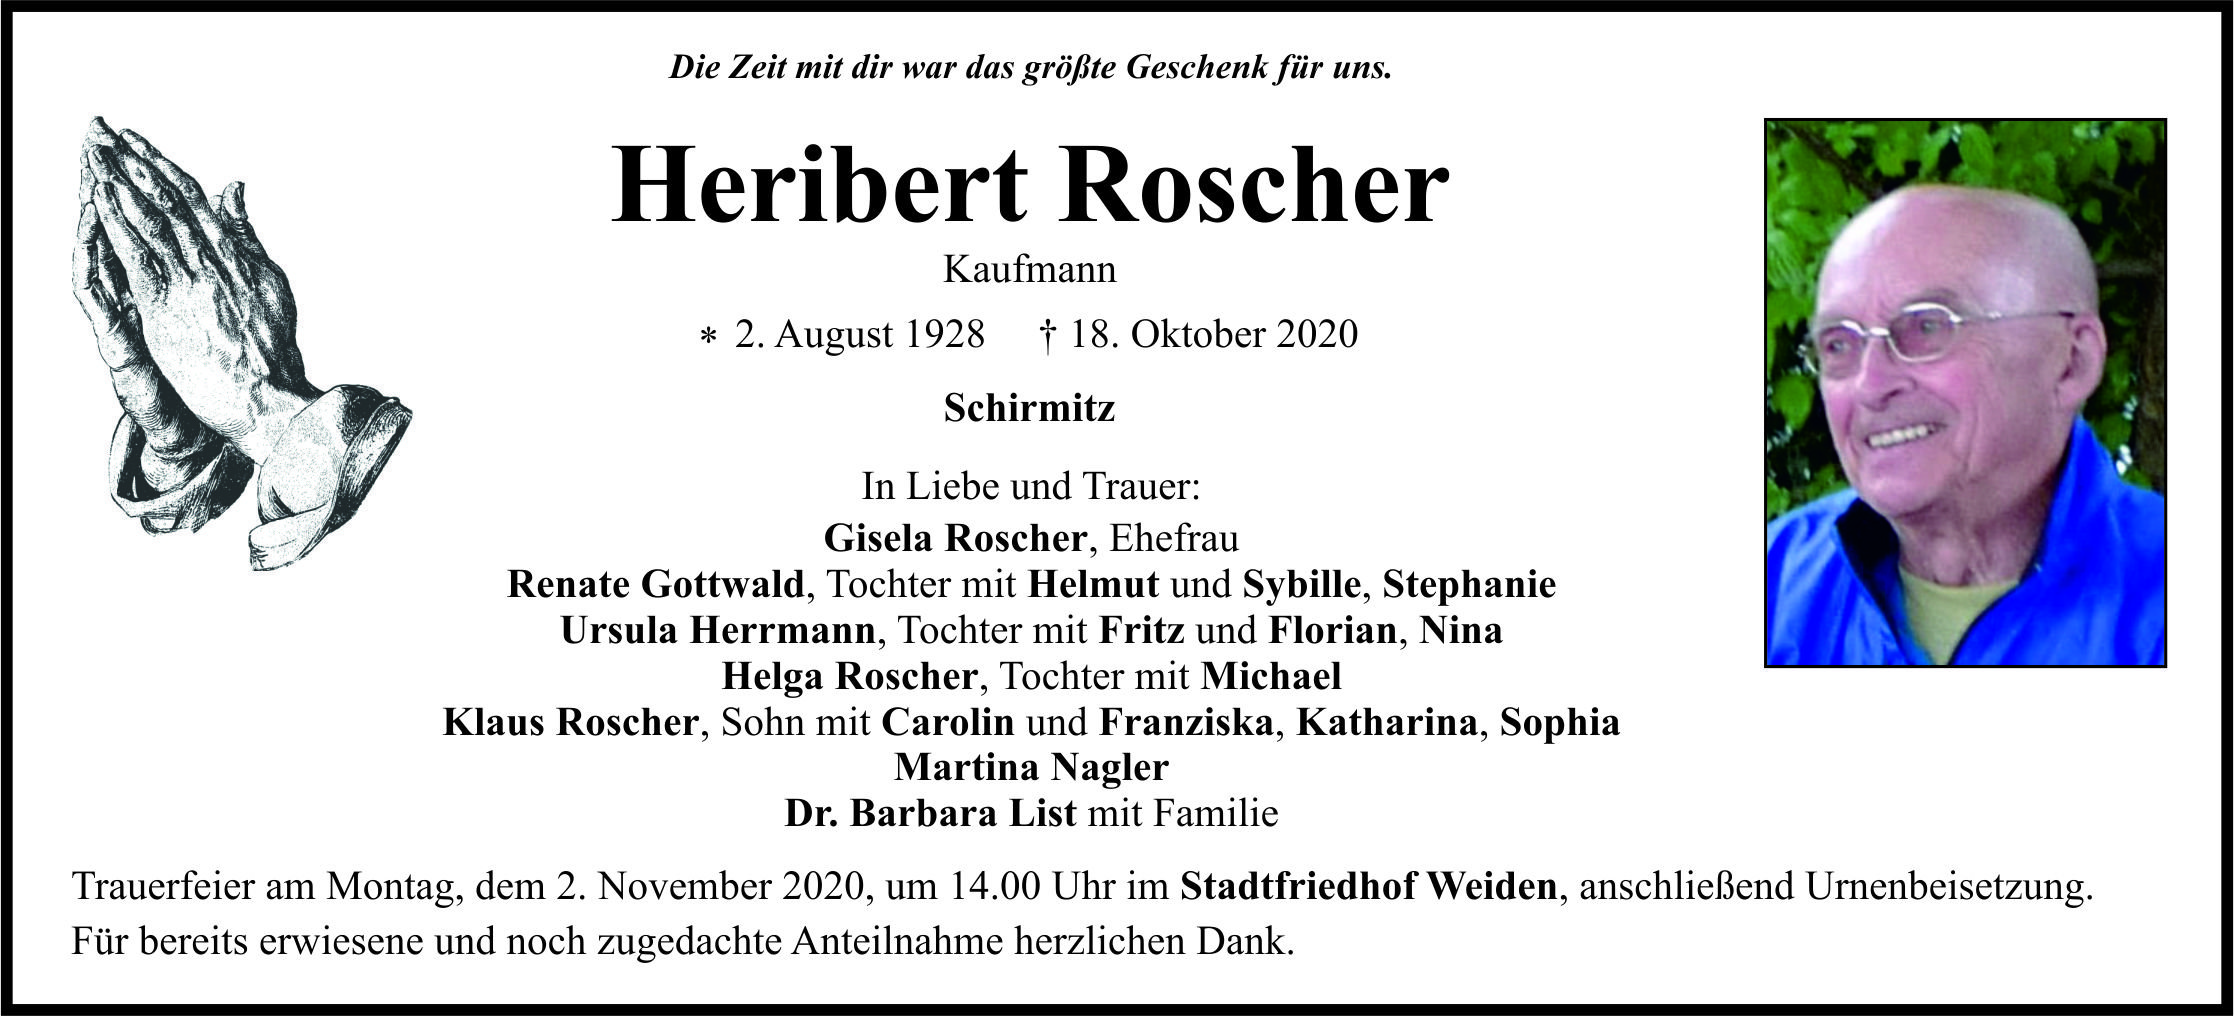 Traueranzeige Heribert Roscher, Schirmitz